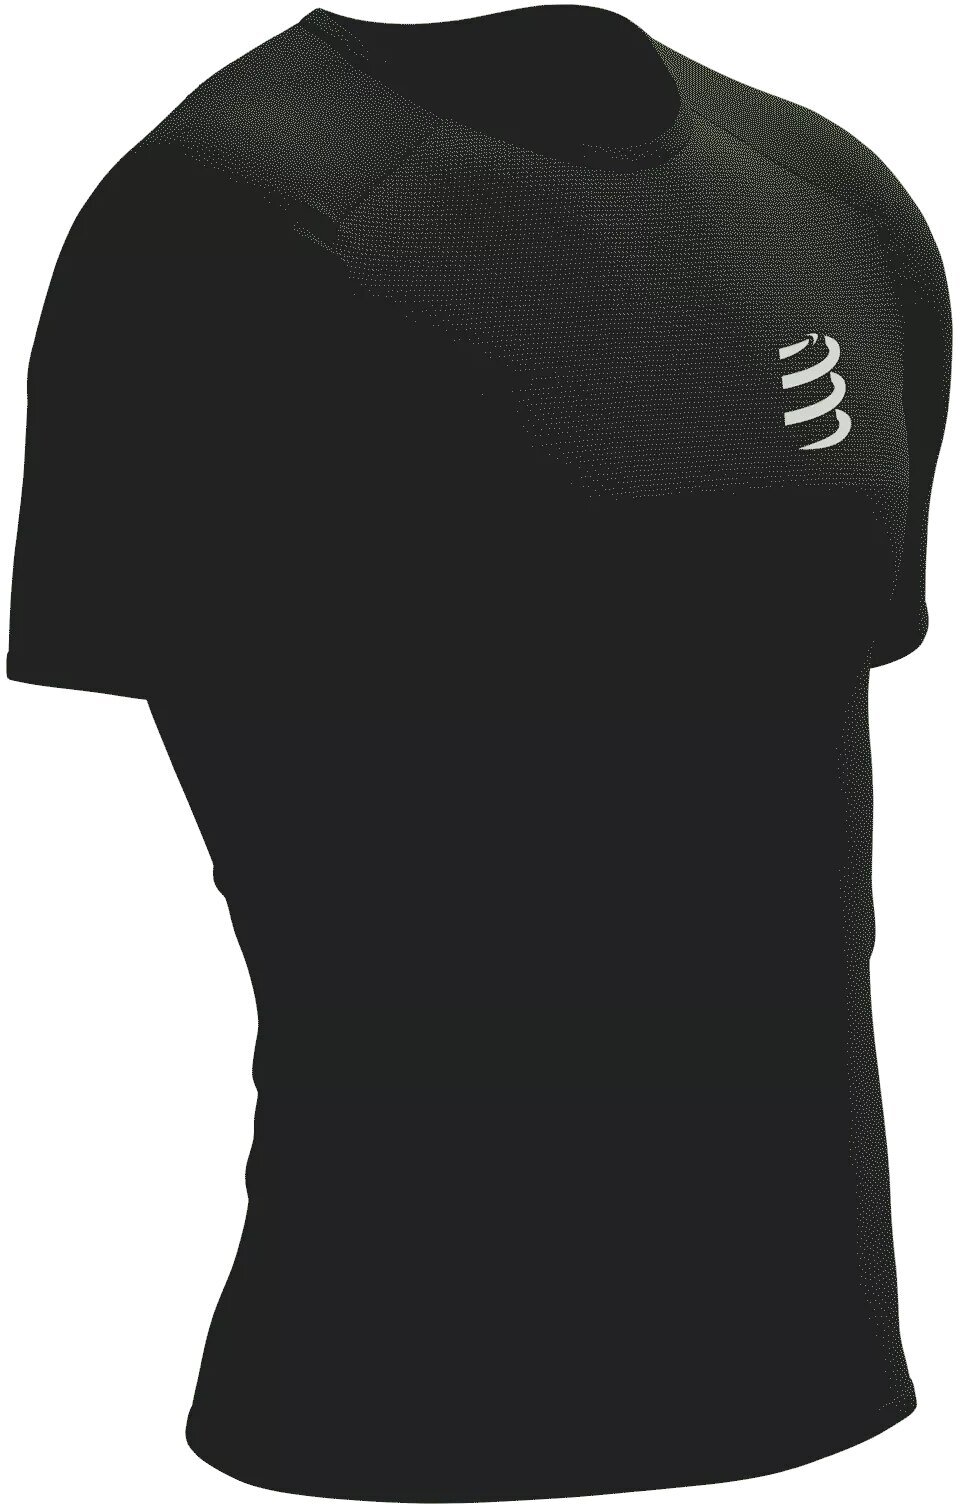 Compressport Performance SS Tshirt M Black/White S Bežecké tričko s krátkym rukávom